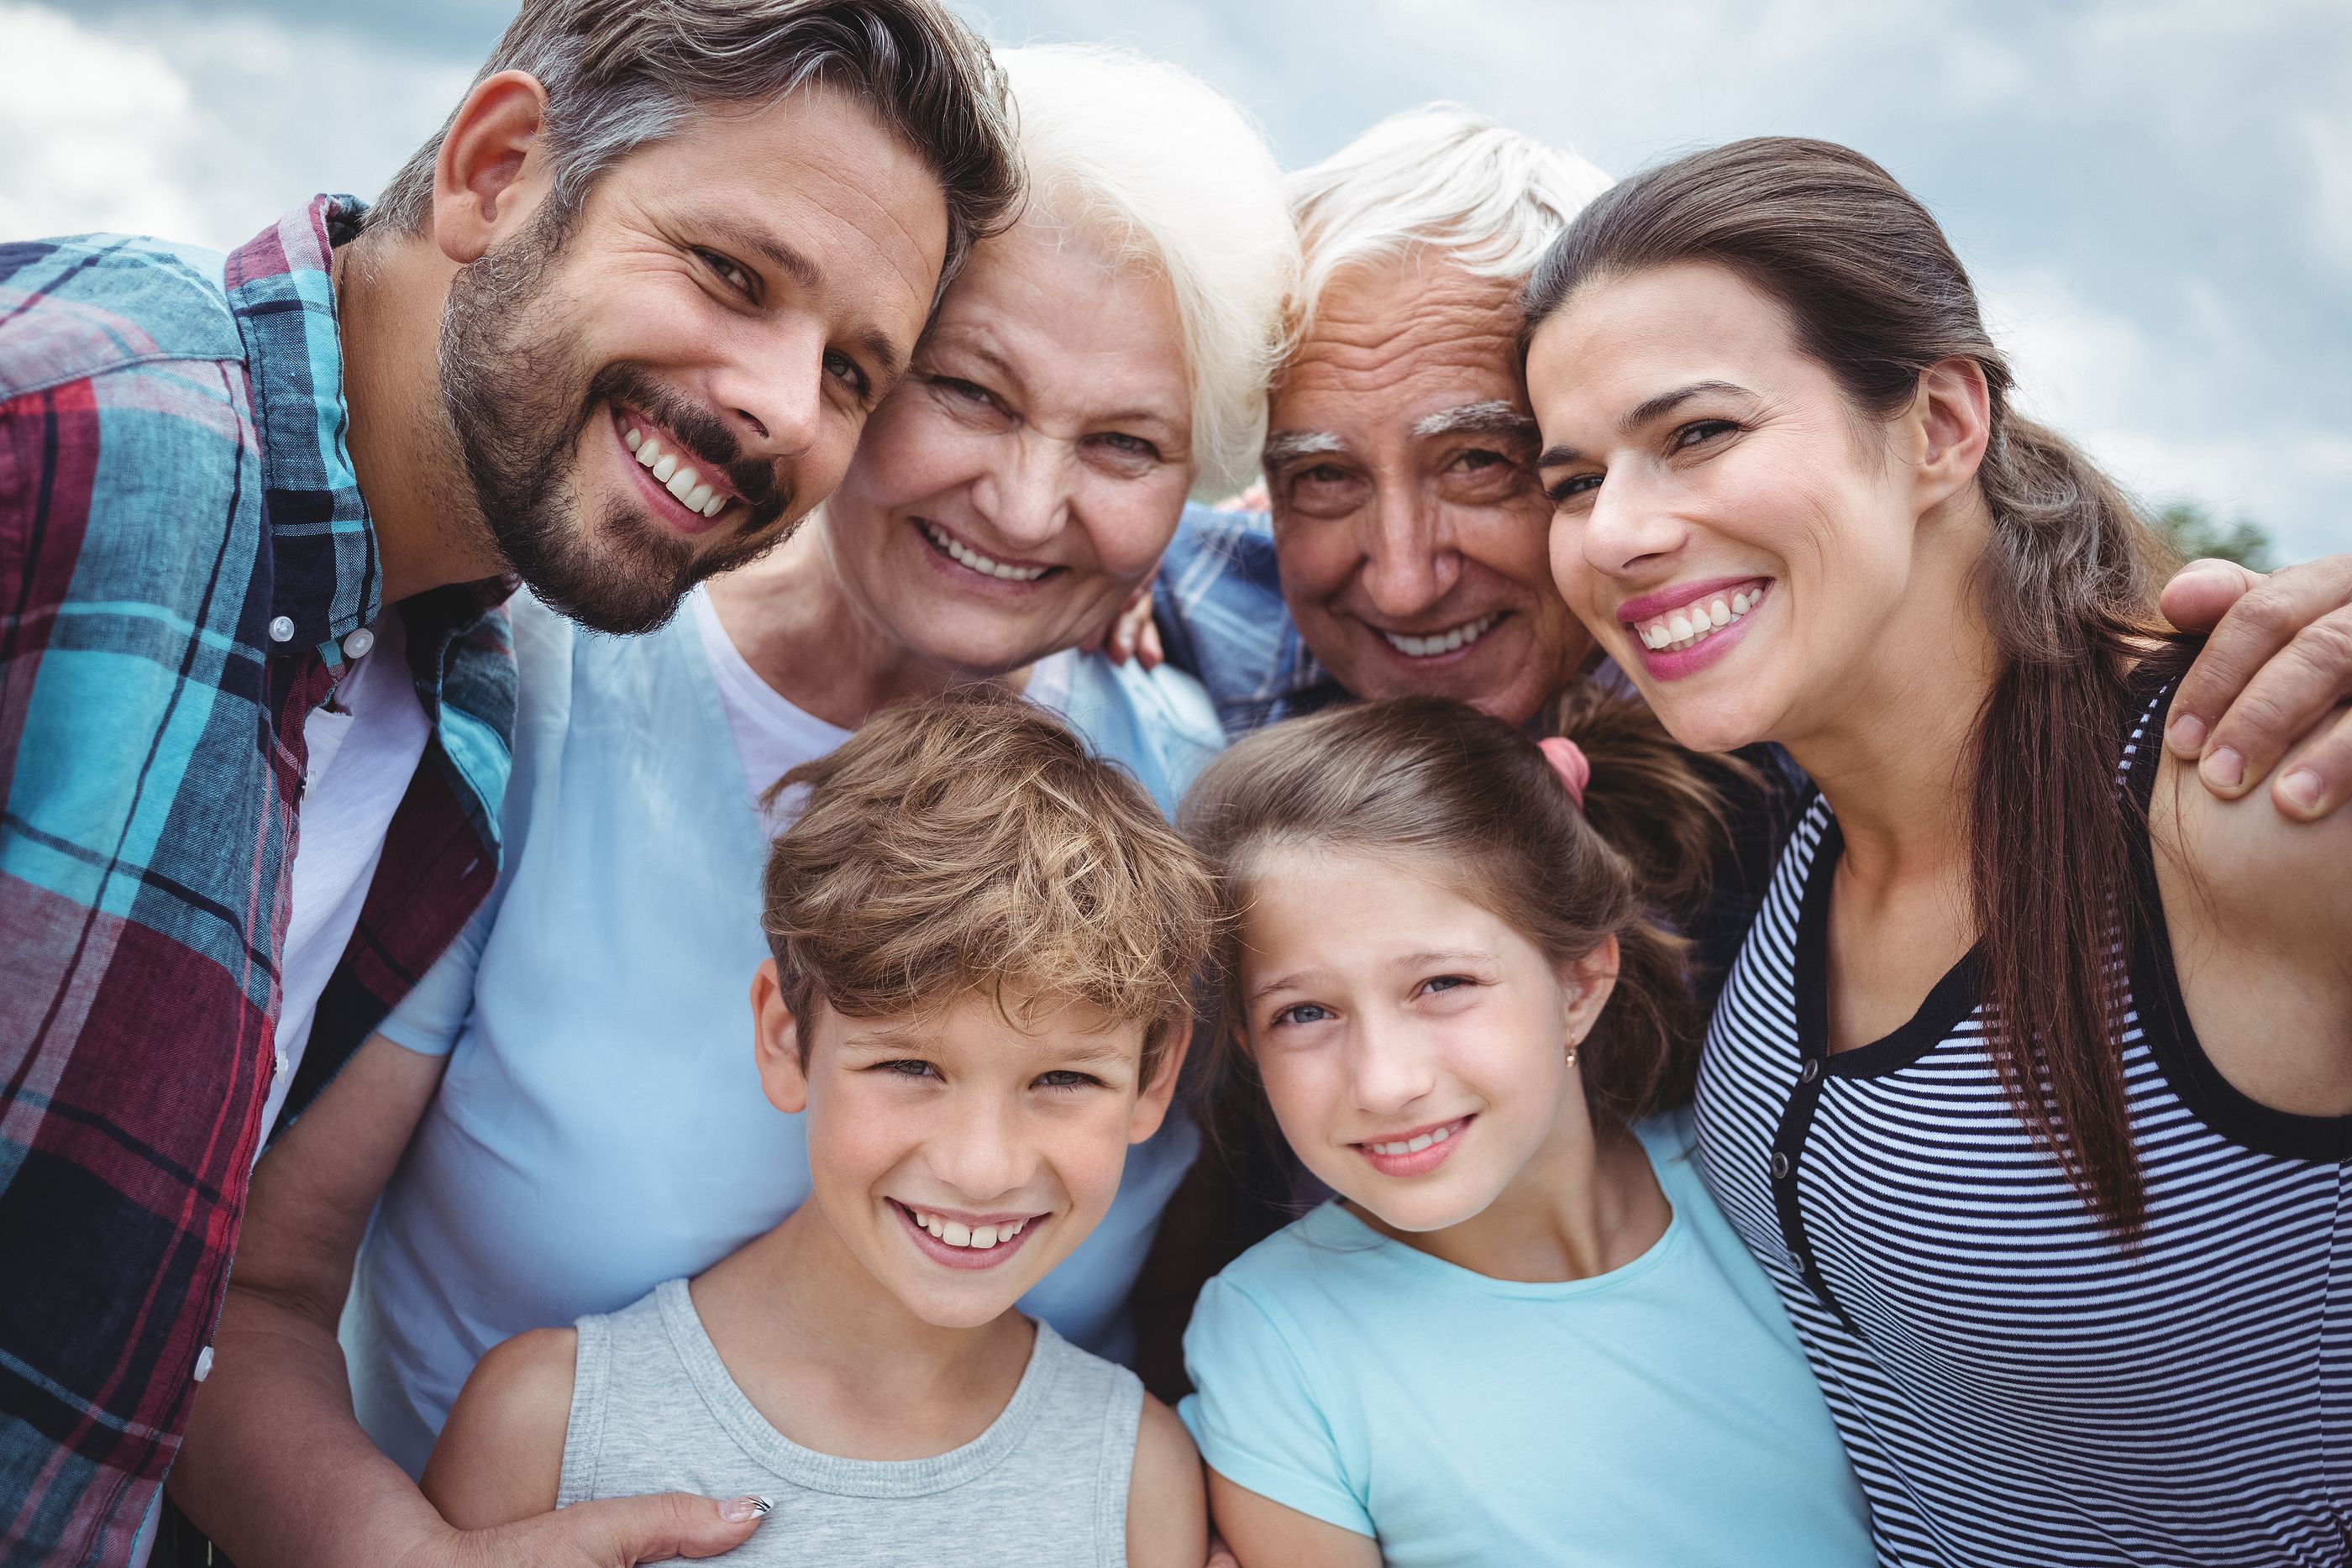 Menos nietos y más abuelos y bisabuelos: así cambiarán las familias en los próximos años (Bigstock)